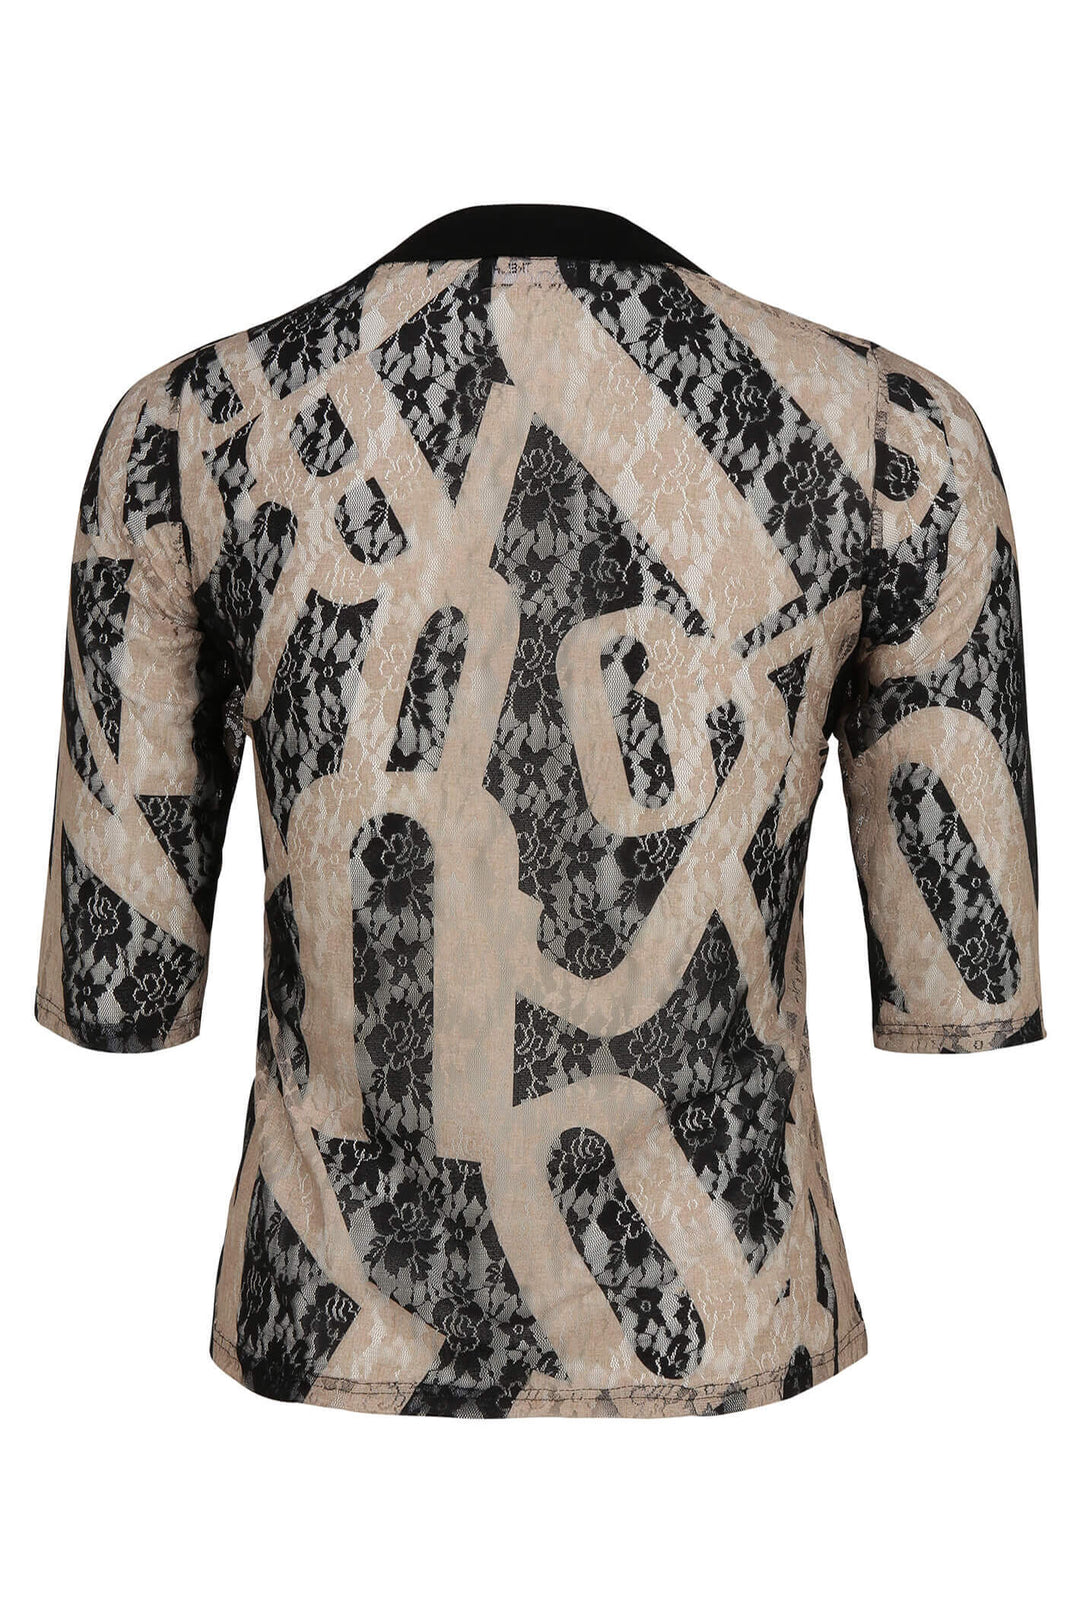 Doris Streich 345 754 88 Black Lace Sand Motif Zip Front Jacket - Shirley Allum Boutique